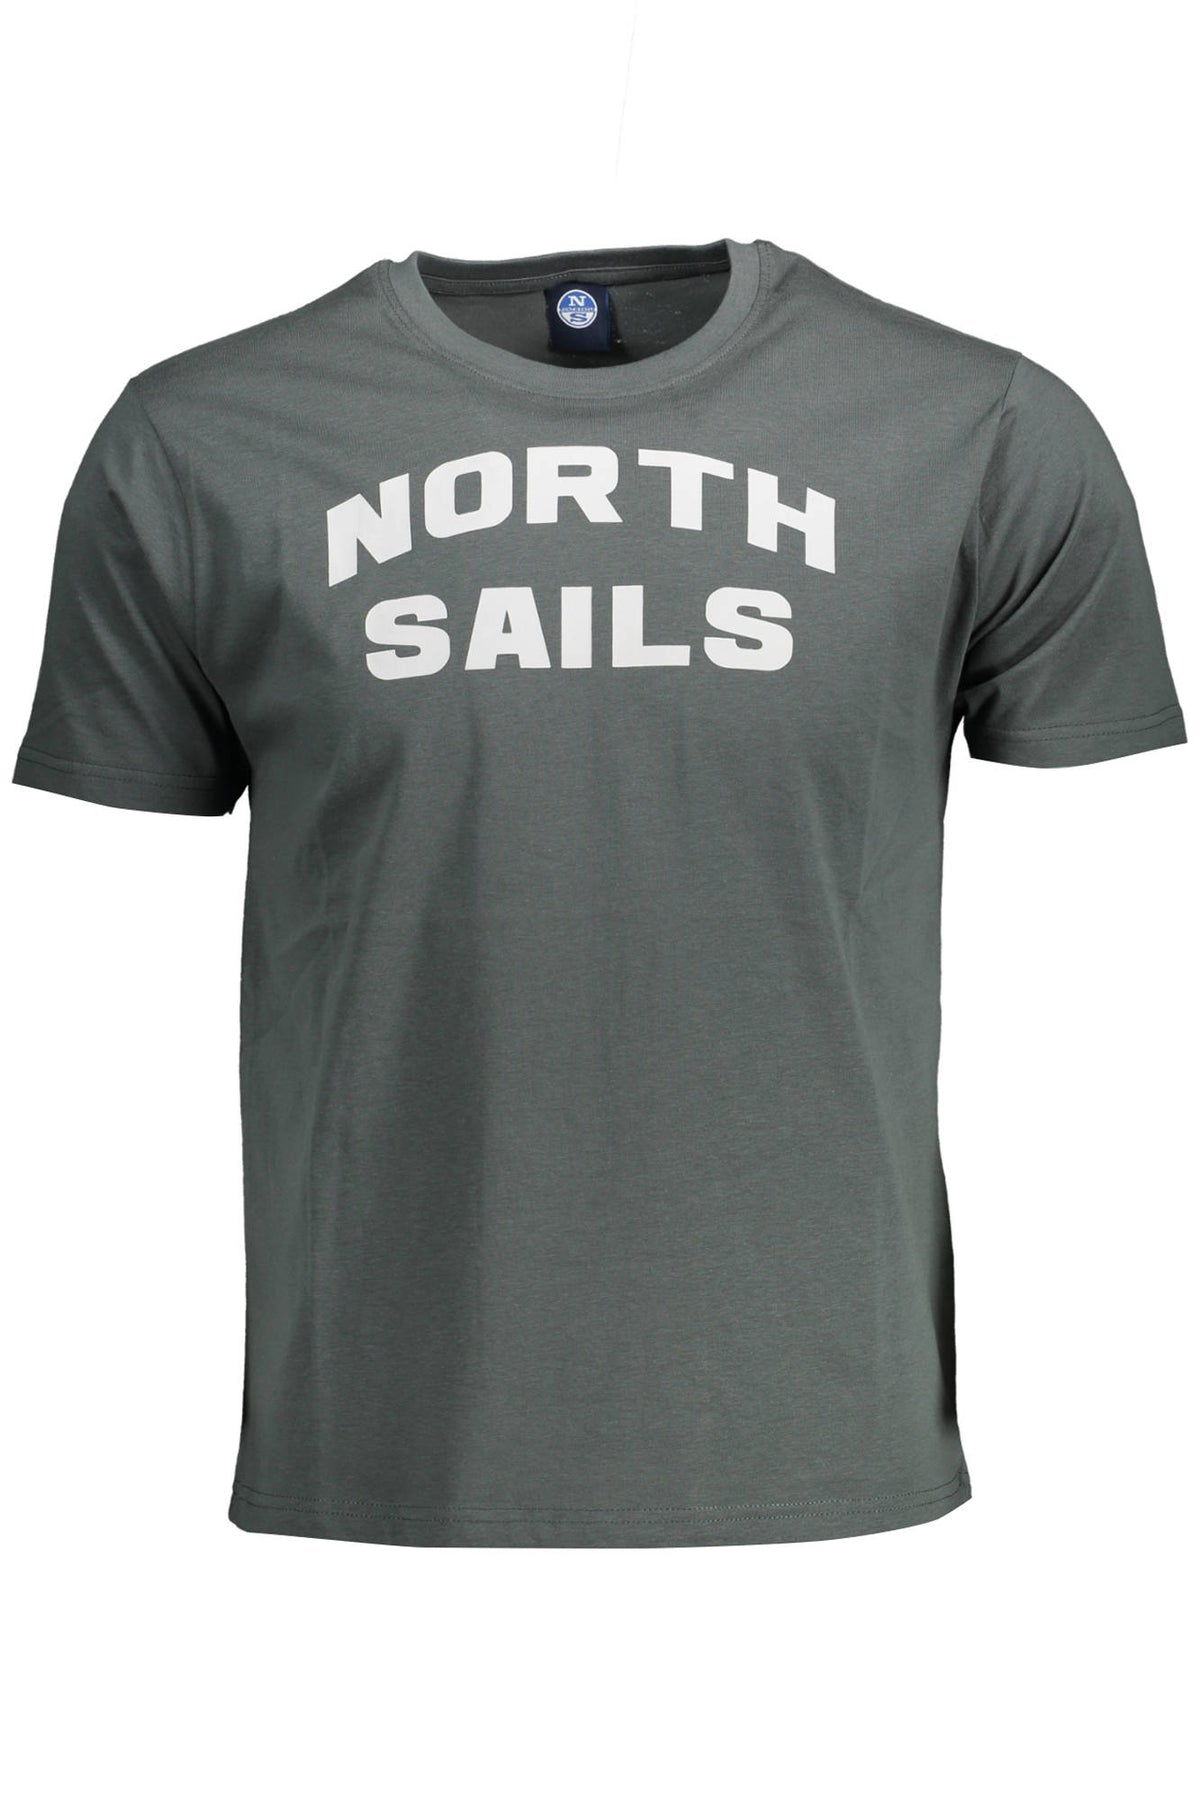 North Sails Herren T-Shirt Sweatshirt mit Rundhalsausschnitt, kurzarm